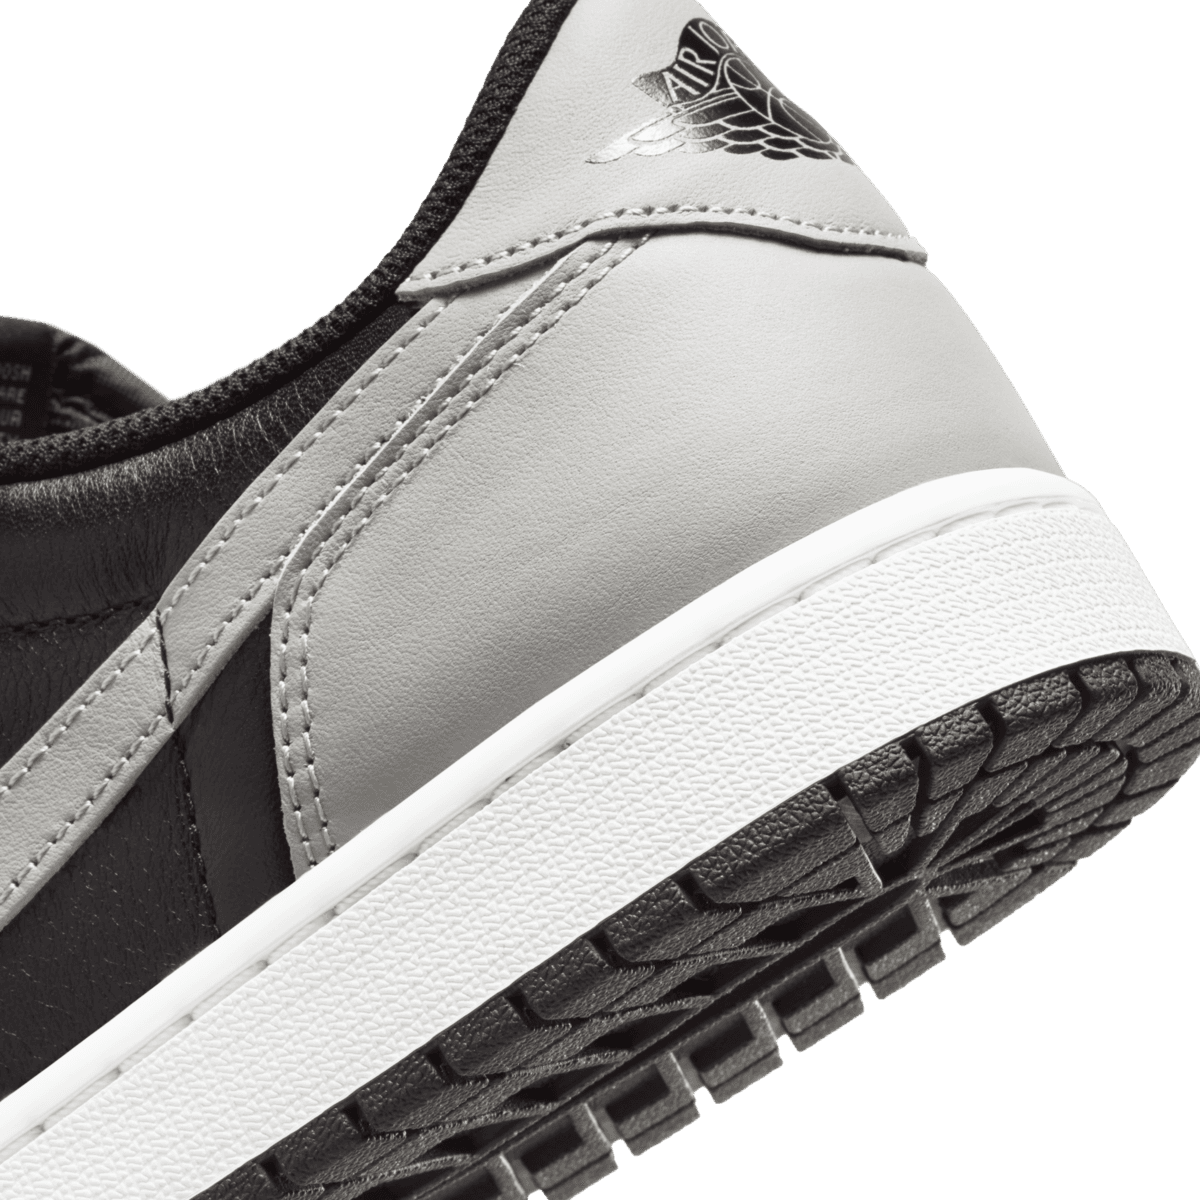 Nike Air Jordan 1 Low OG 'Shadow' midsole